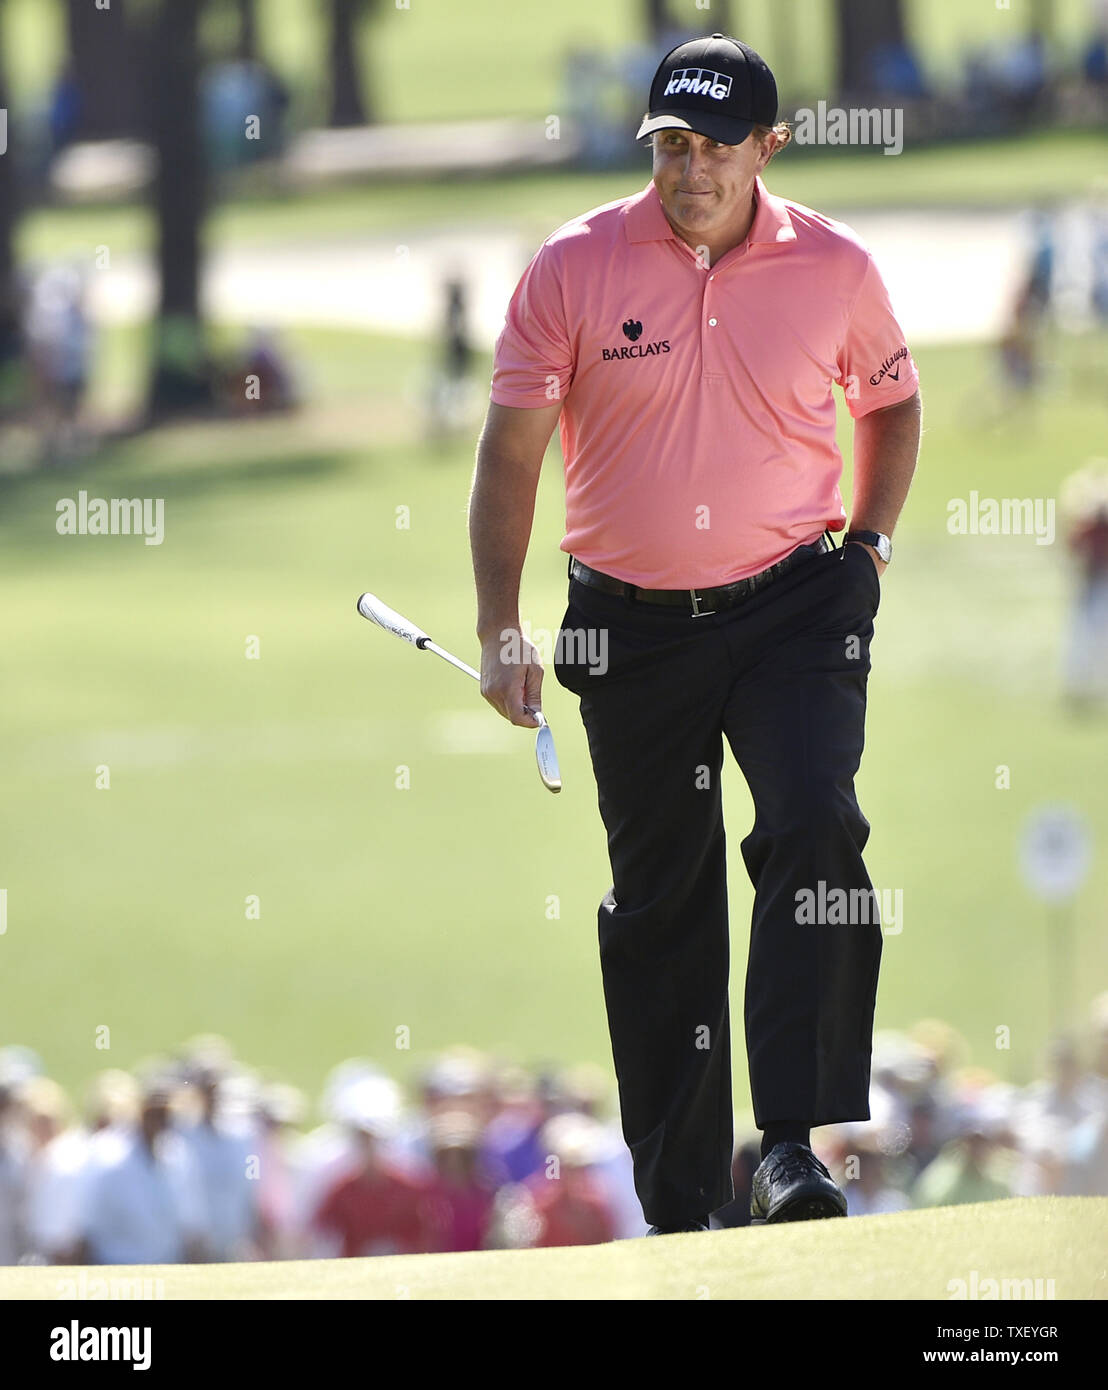 Phil Mickelson passeggiate sul nono verde prima di effettuare un putt per il birdie nel terzo round del 2015 Masters a Augusta National Golf Club a Augusta, in Georgia il 11 aprile 2015. Foto di Kevin Dietsch/UPI Foto Stock